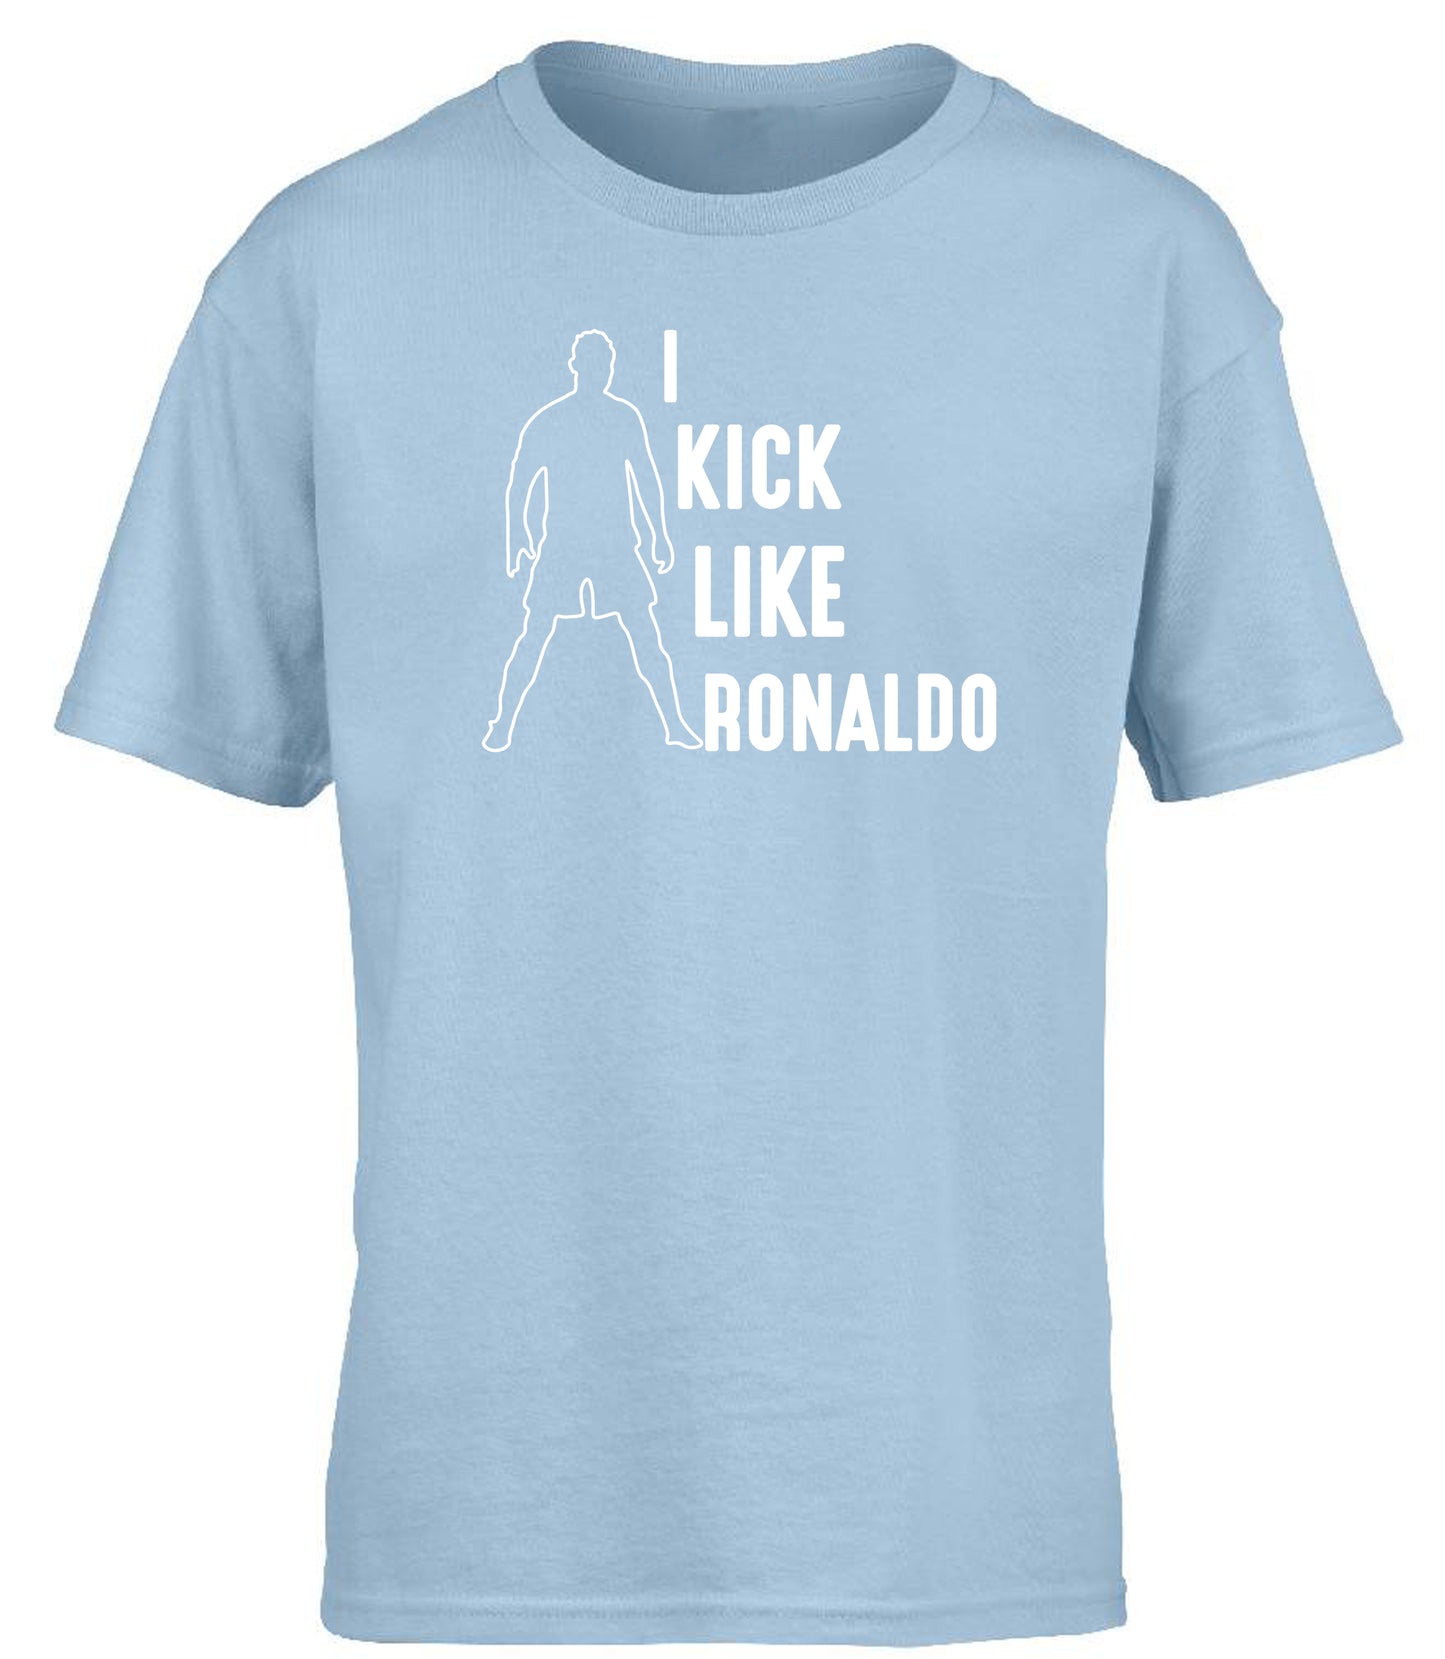 I Kick Like Ronaldo children's T-shirt